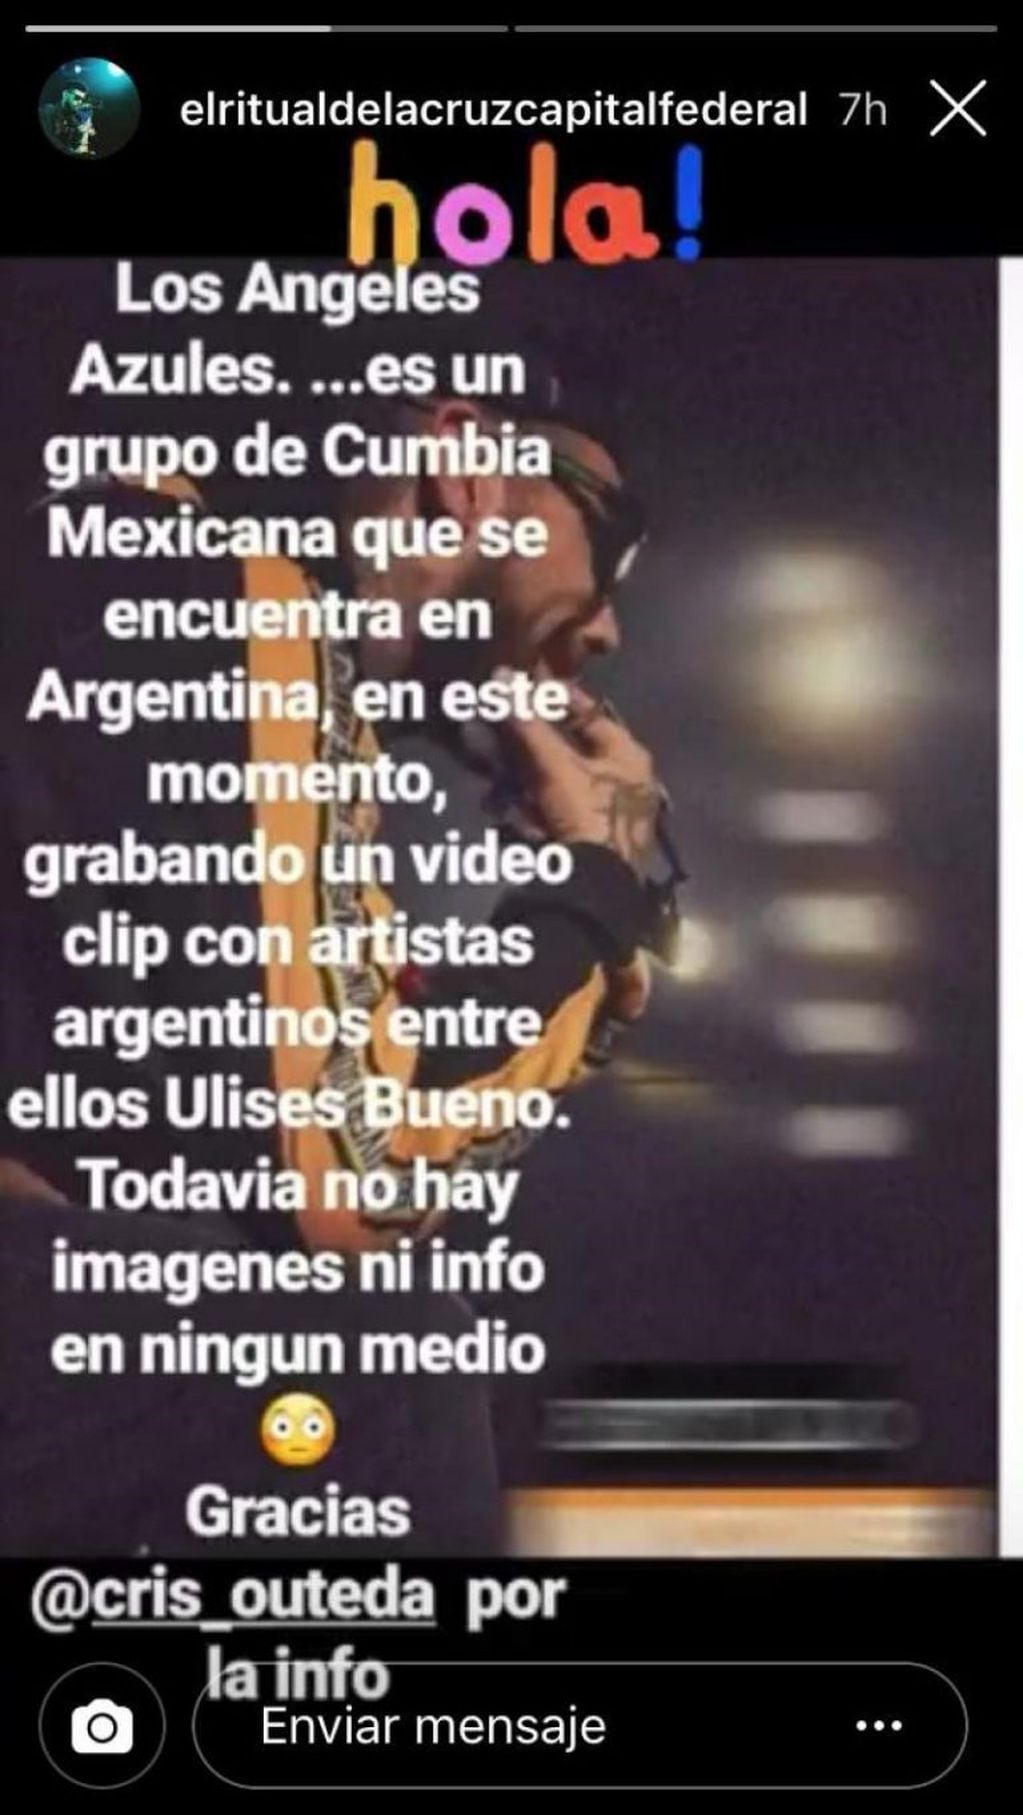 Ulises Bueno grabará para el nuevo trabajo del conjunto mejicano de cumbia, Los Ángeles Azules.